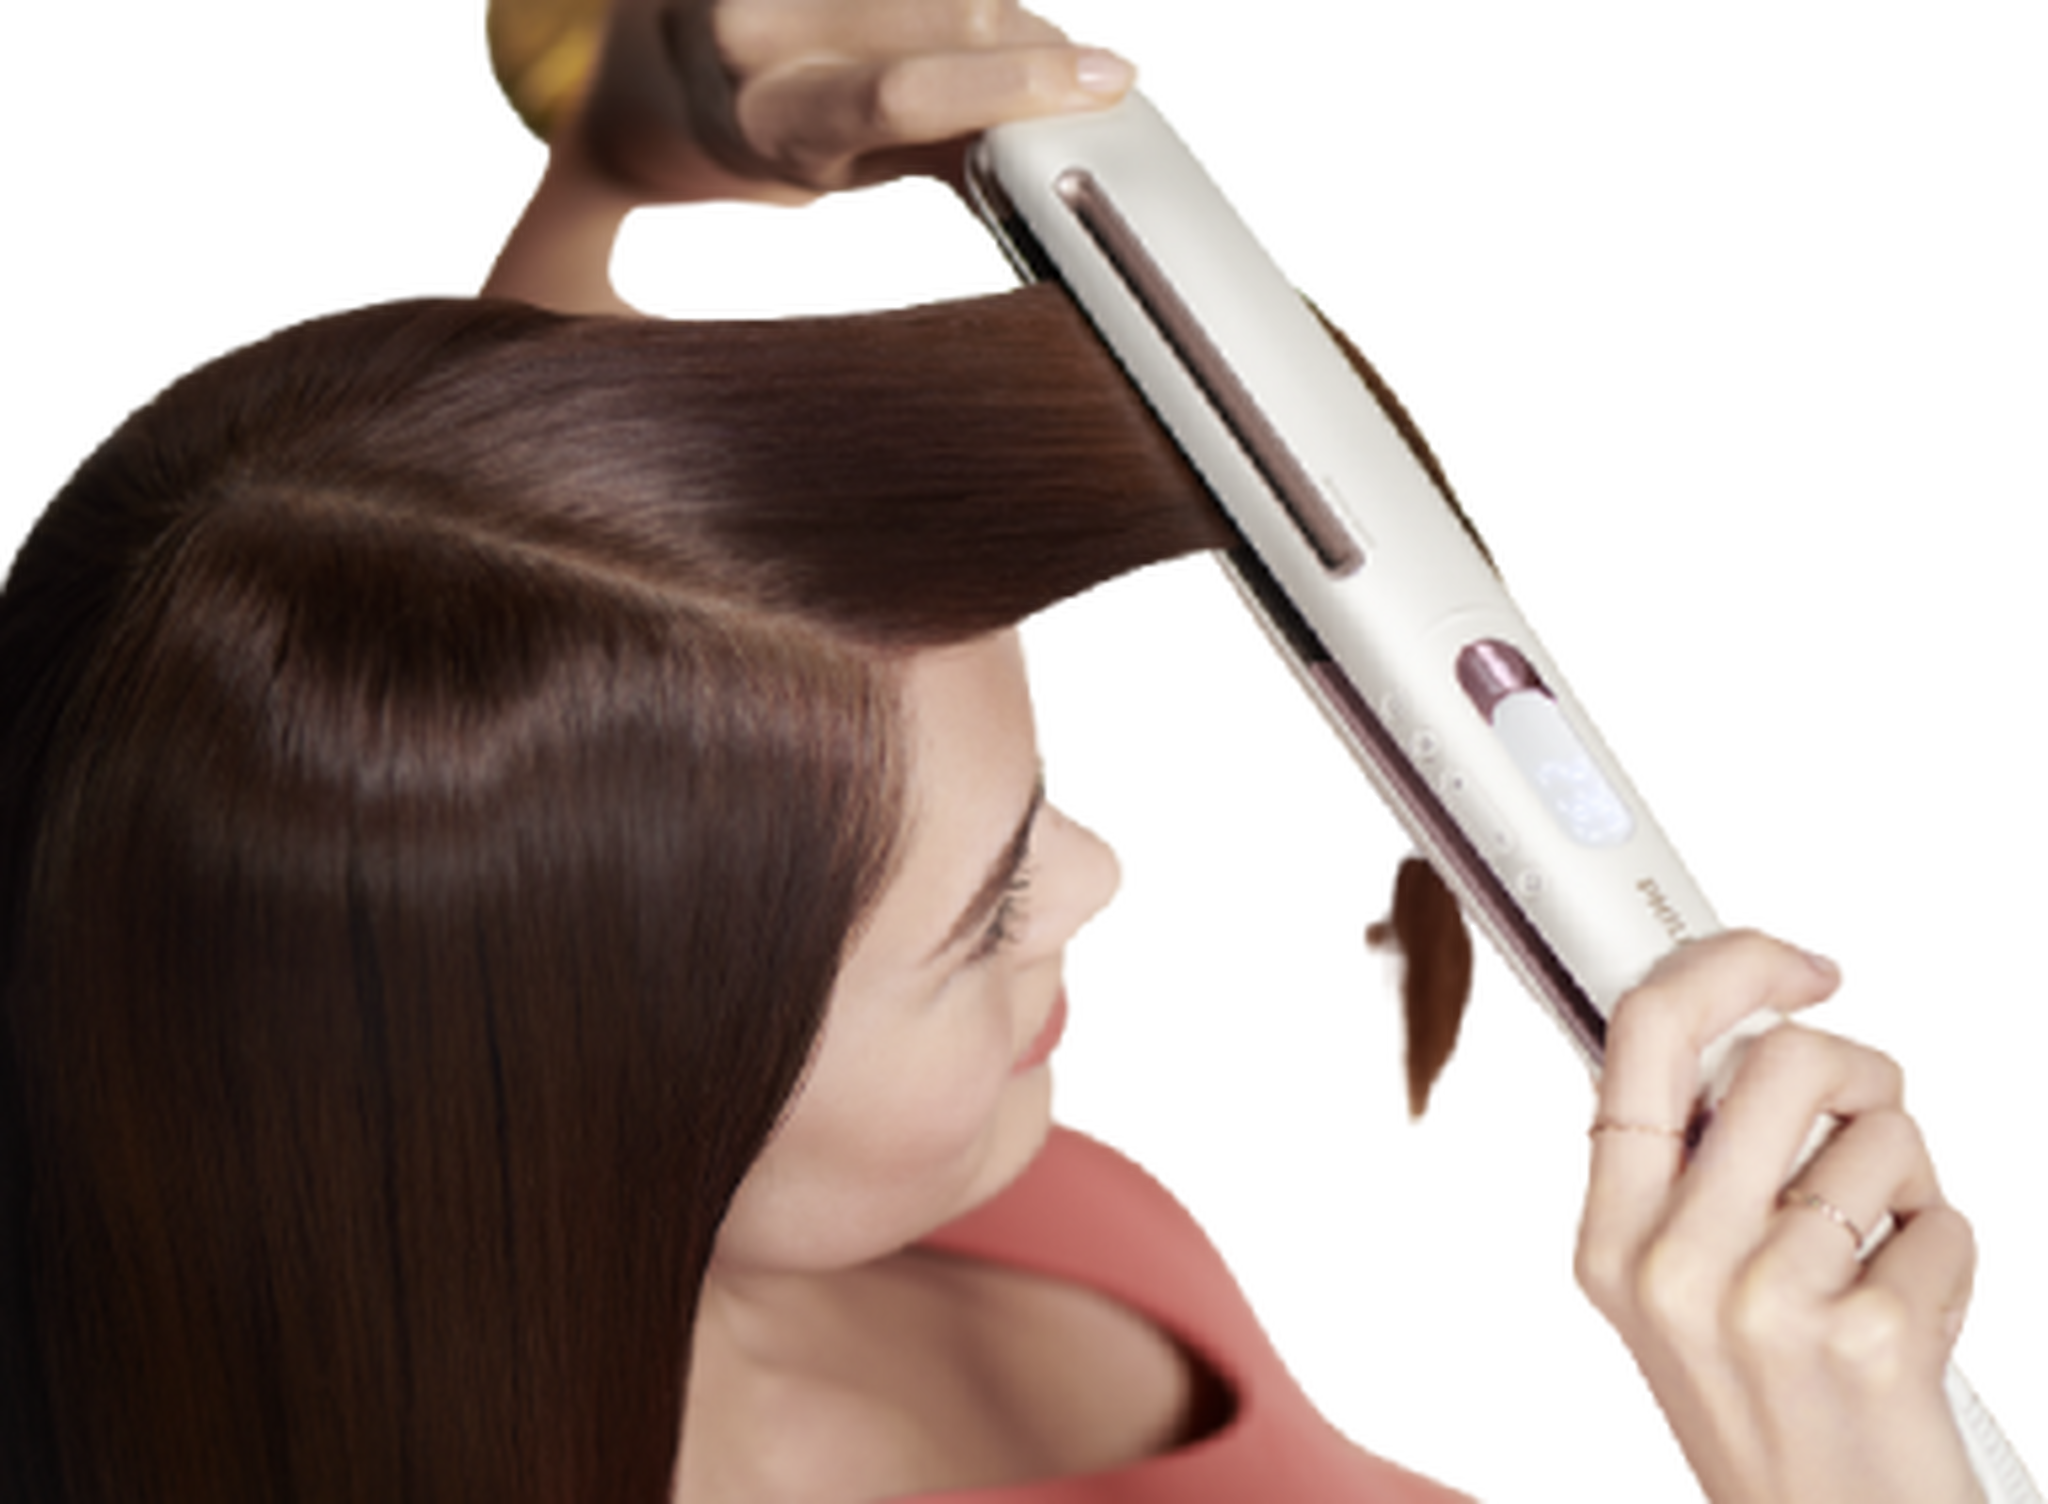 مملس الشعر بريستيج من فيليبس بنظام تيترا أيونيك، 14 إعداد لدرجة الحرارة حتى 230 درجة مئوية، BHS830/03 - أبيض